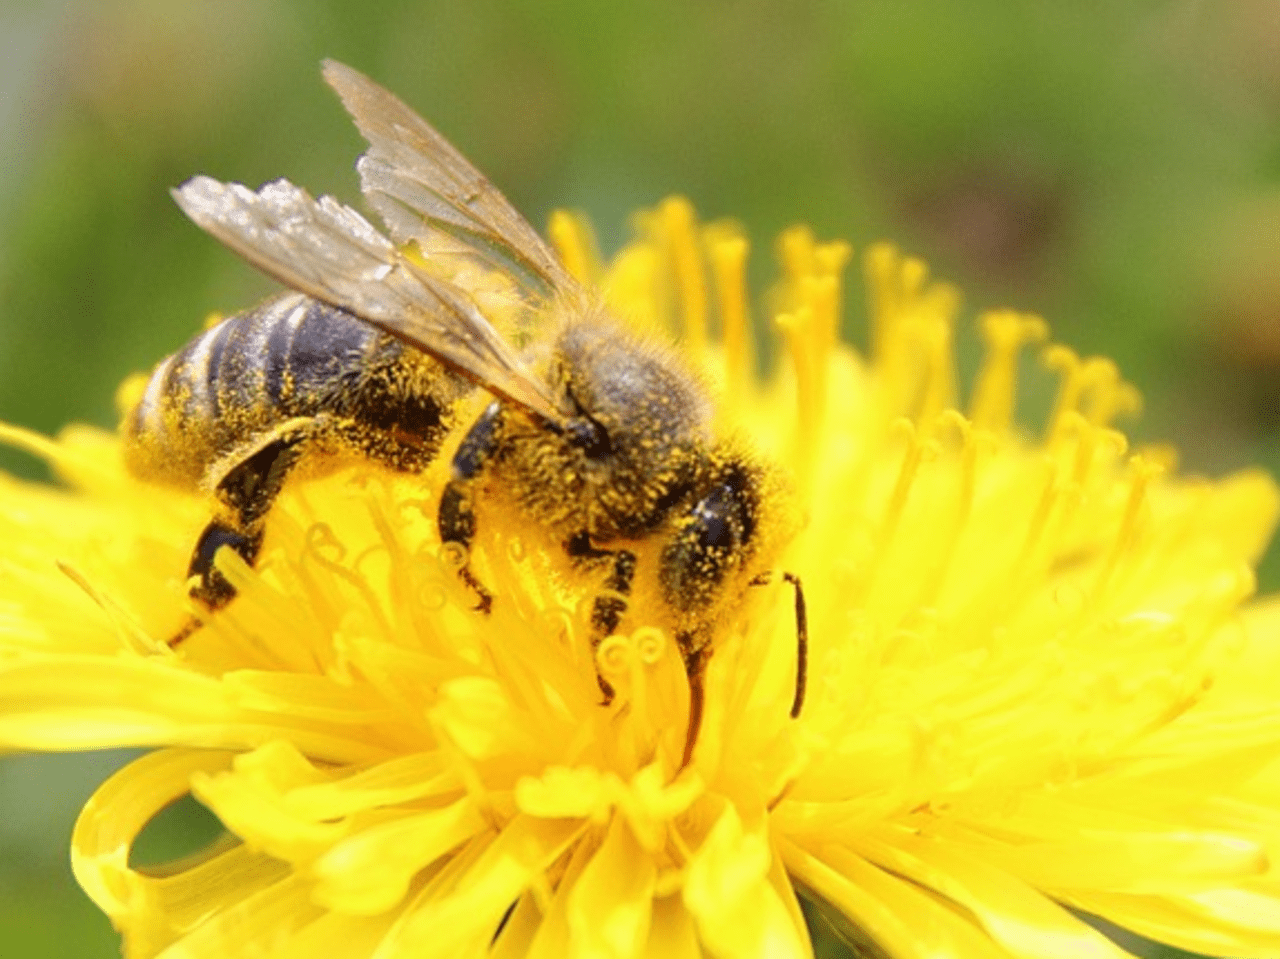 conférence sur la vie des abeilles avec dégustation de miel 7 abeille1 0